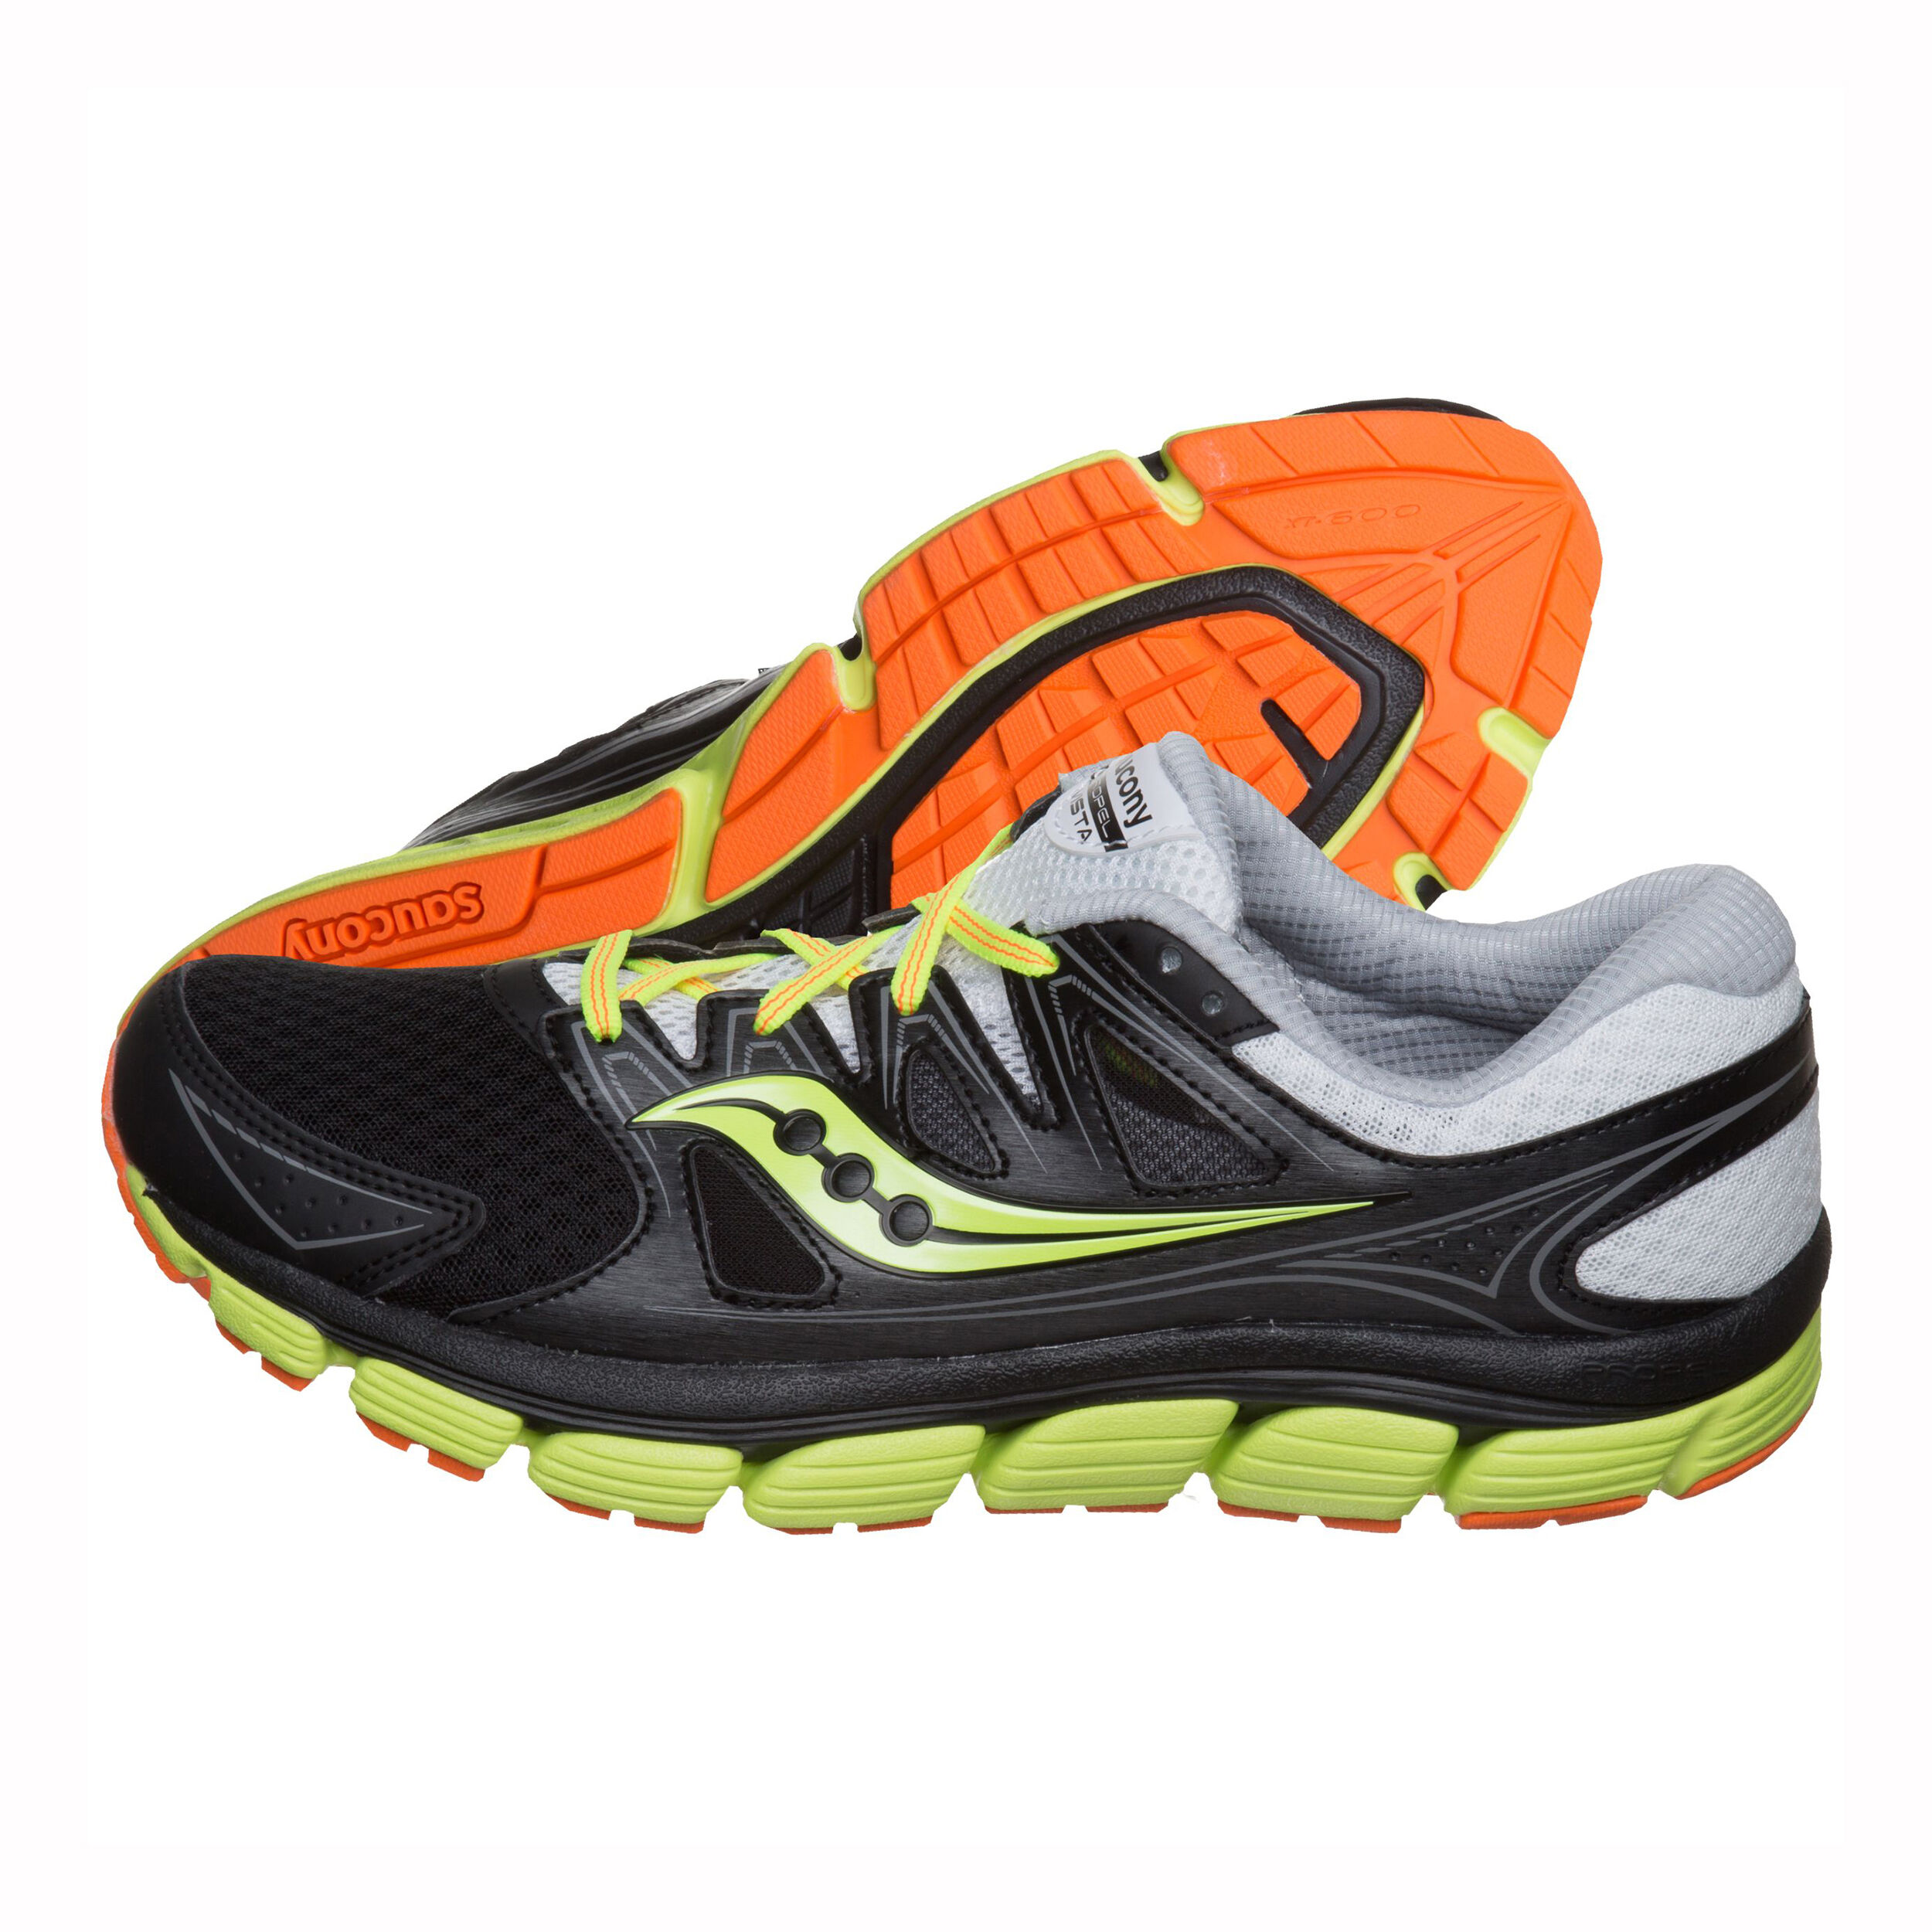 saucony propel vista mens running shoes